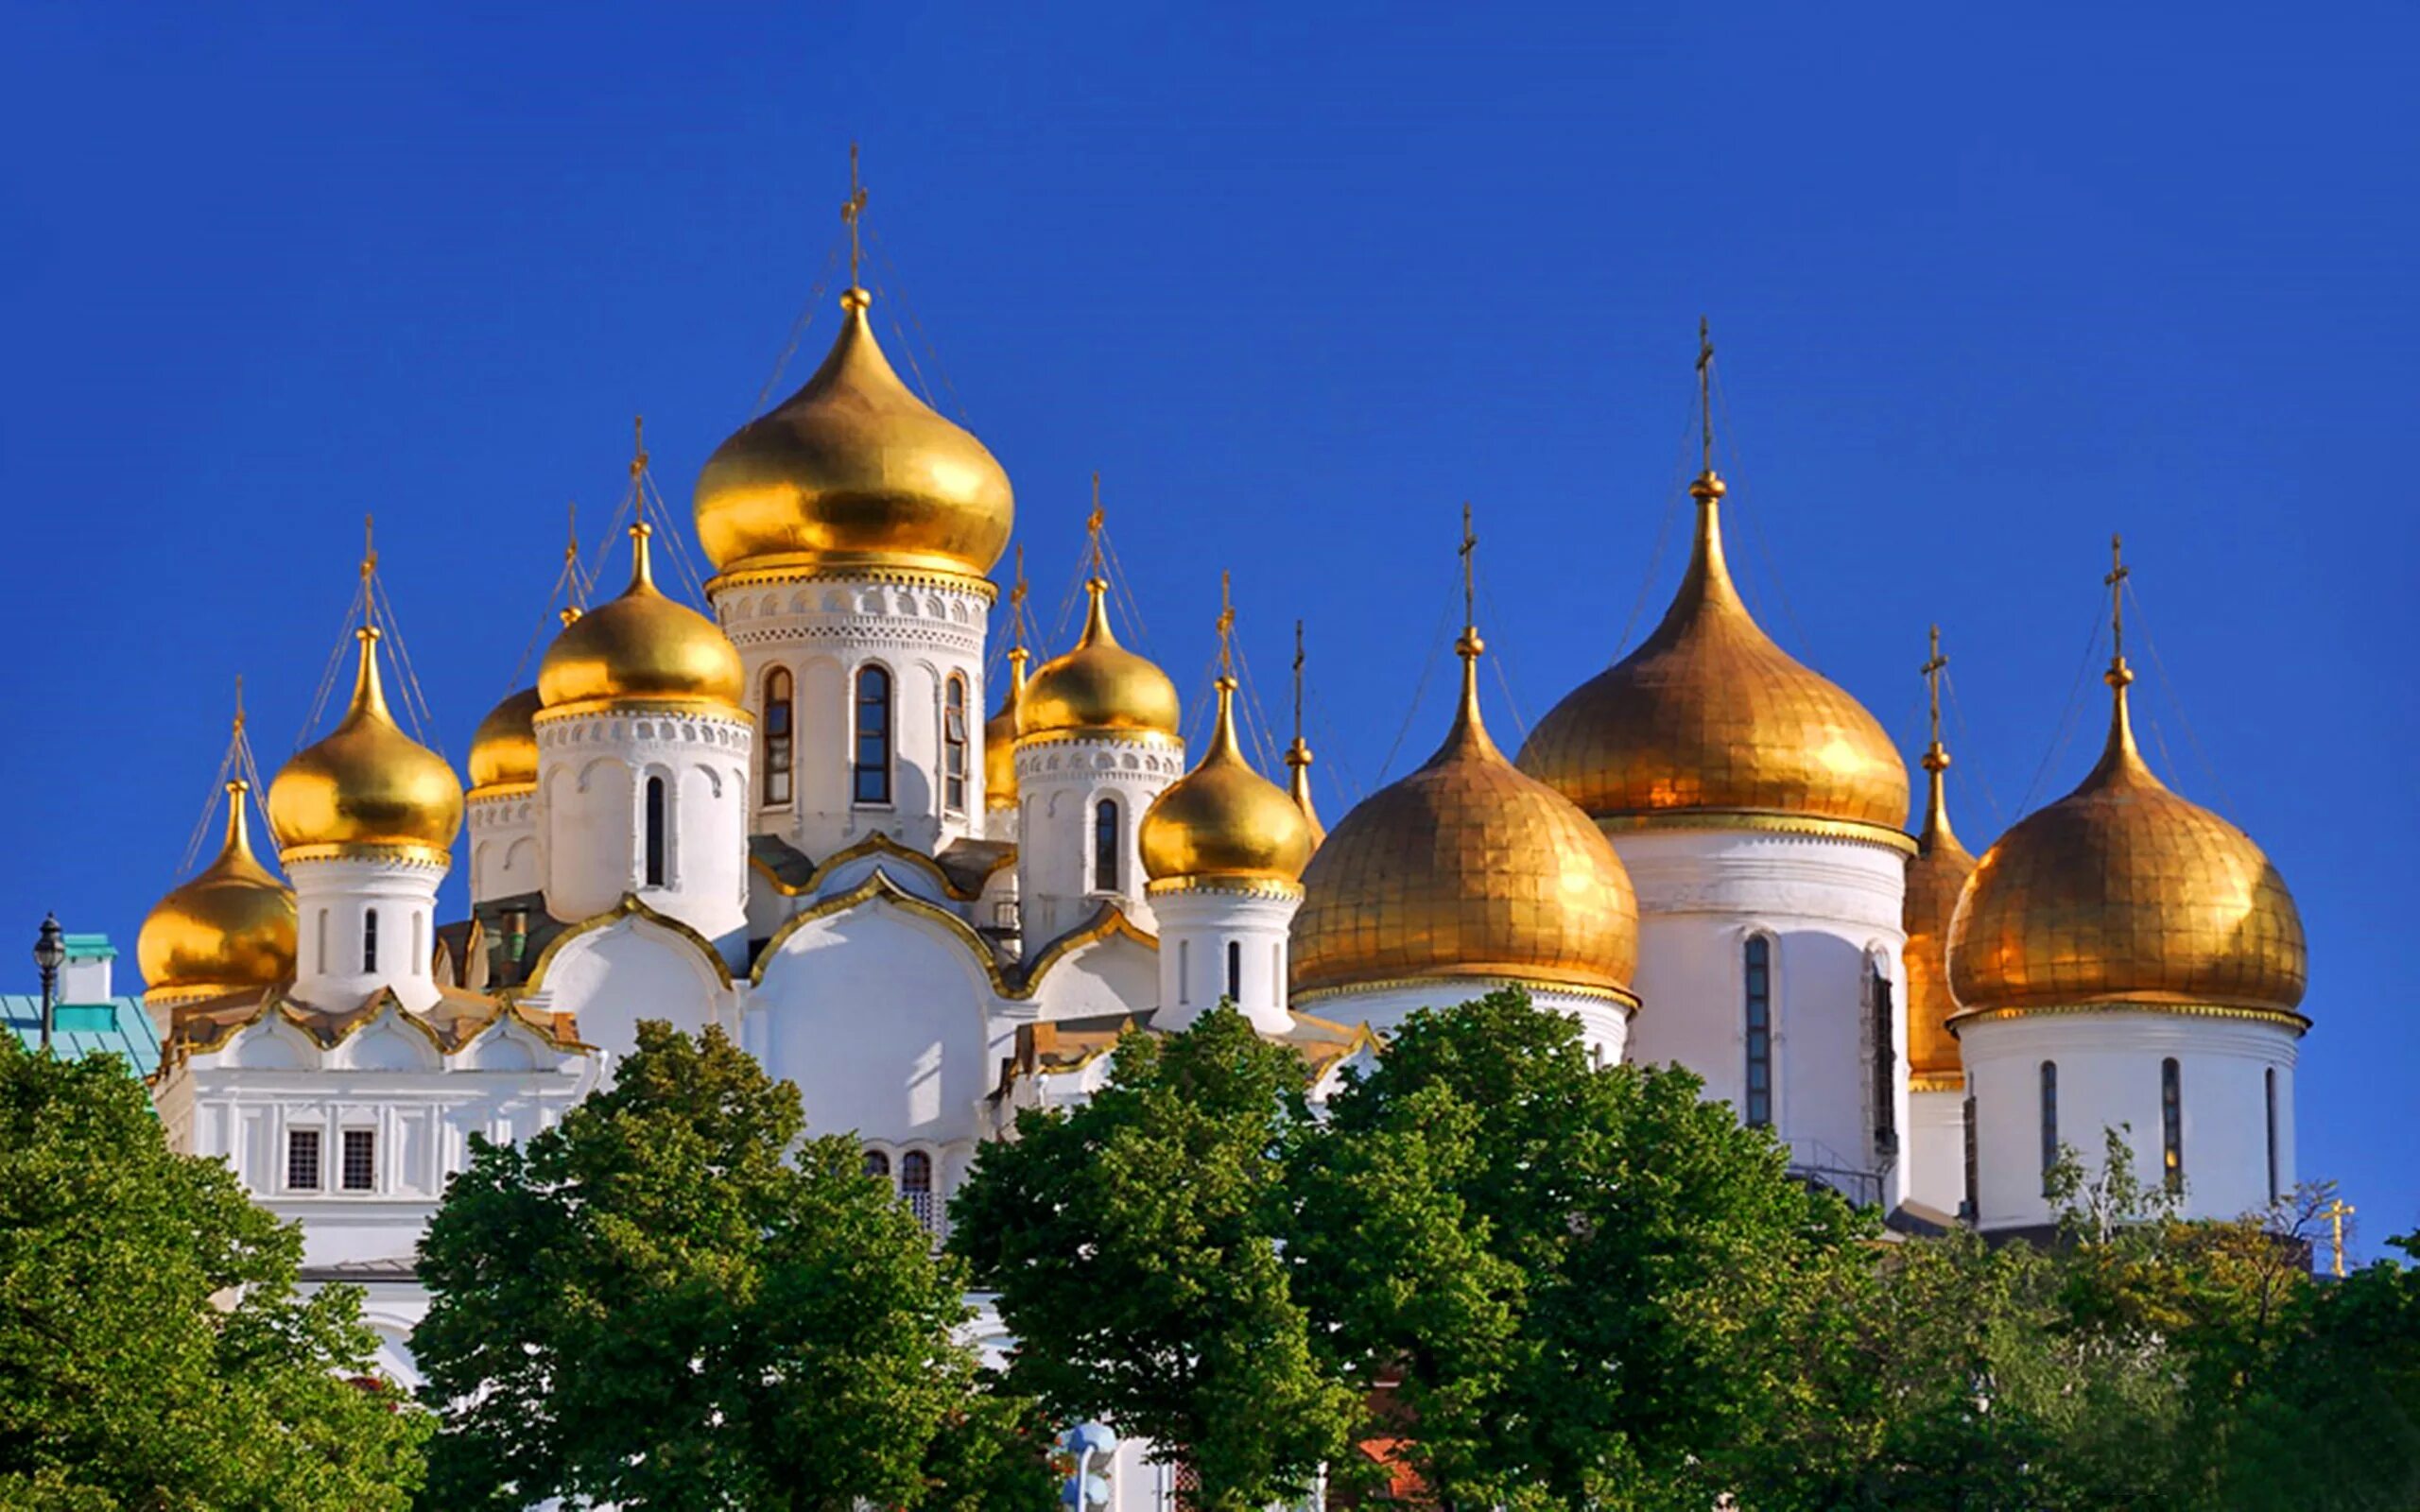 Купола золотые купола. Православный храм с золотыми куполами. Золотые купола храма Христа.